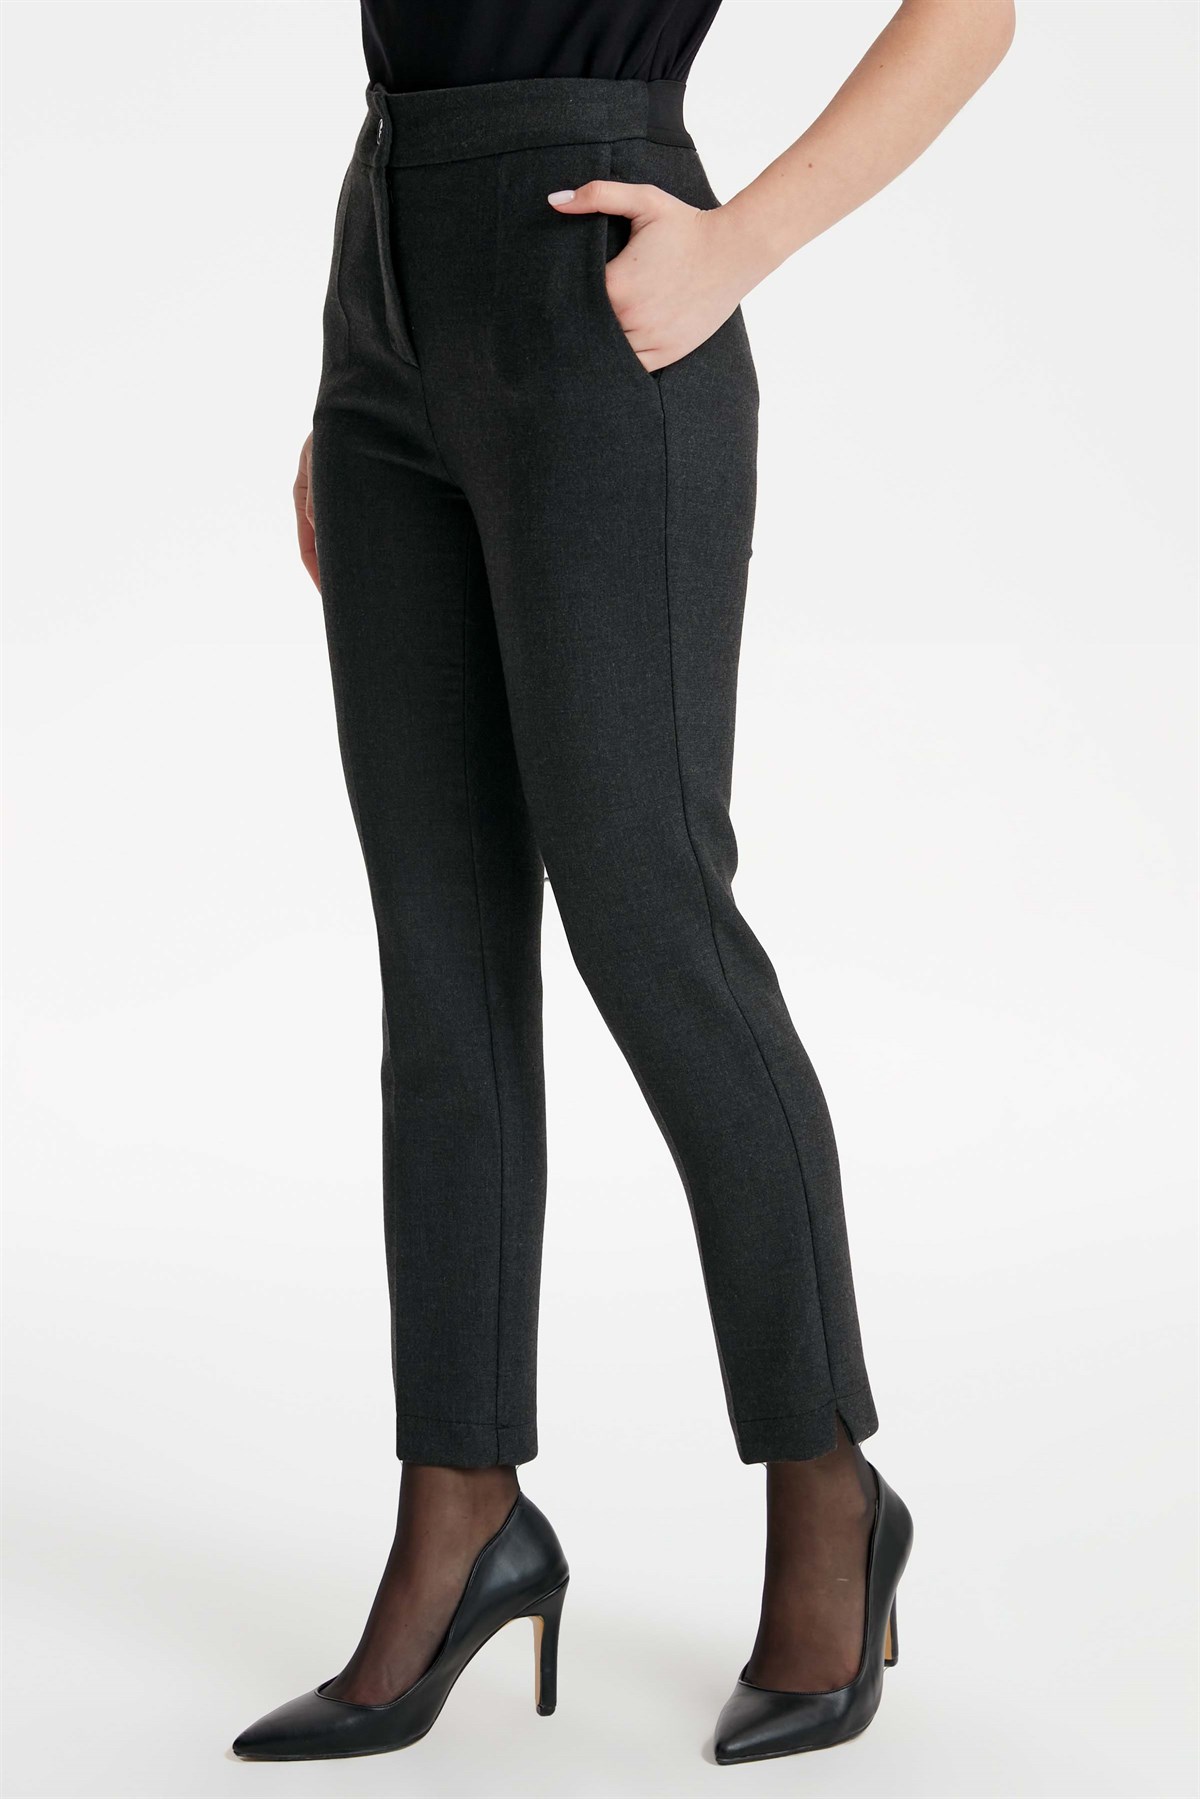 Yüksek Bel Lastikli Yırtmaç Detaylı Pantolon - Siyah